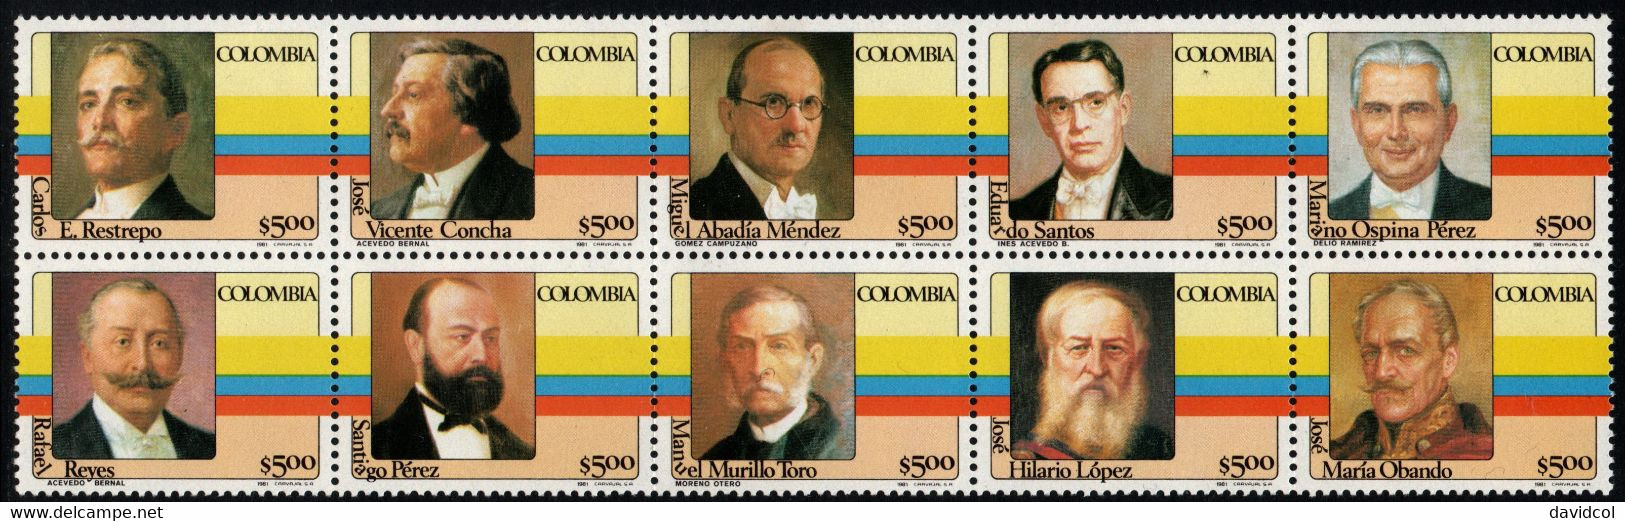 06- KOLUMBIEN - 1981- MI#:1475-1484- MNH- COLOMBIAN PRESIDENTS 1ST ISSUE - Colombie